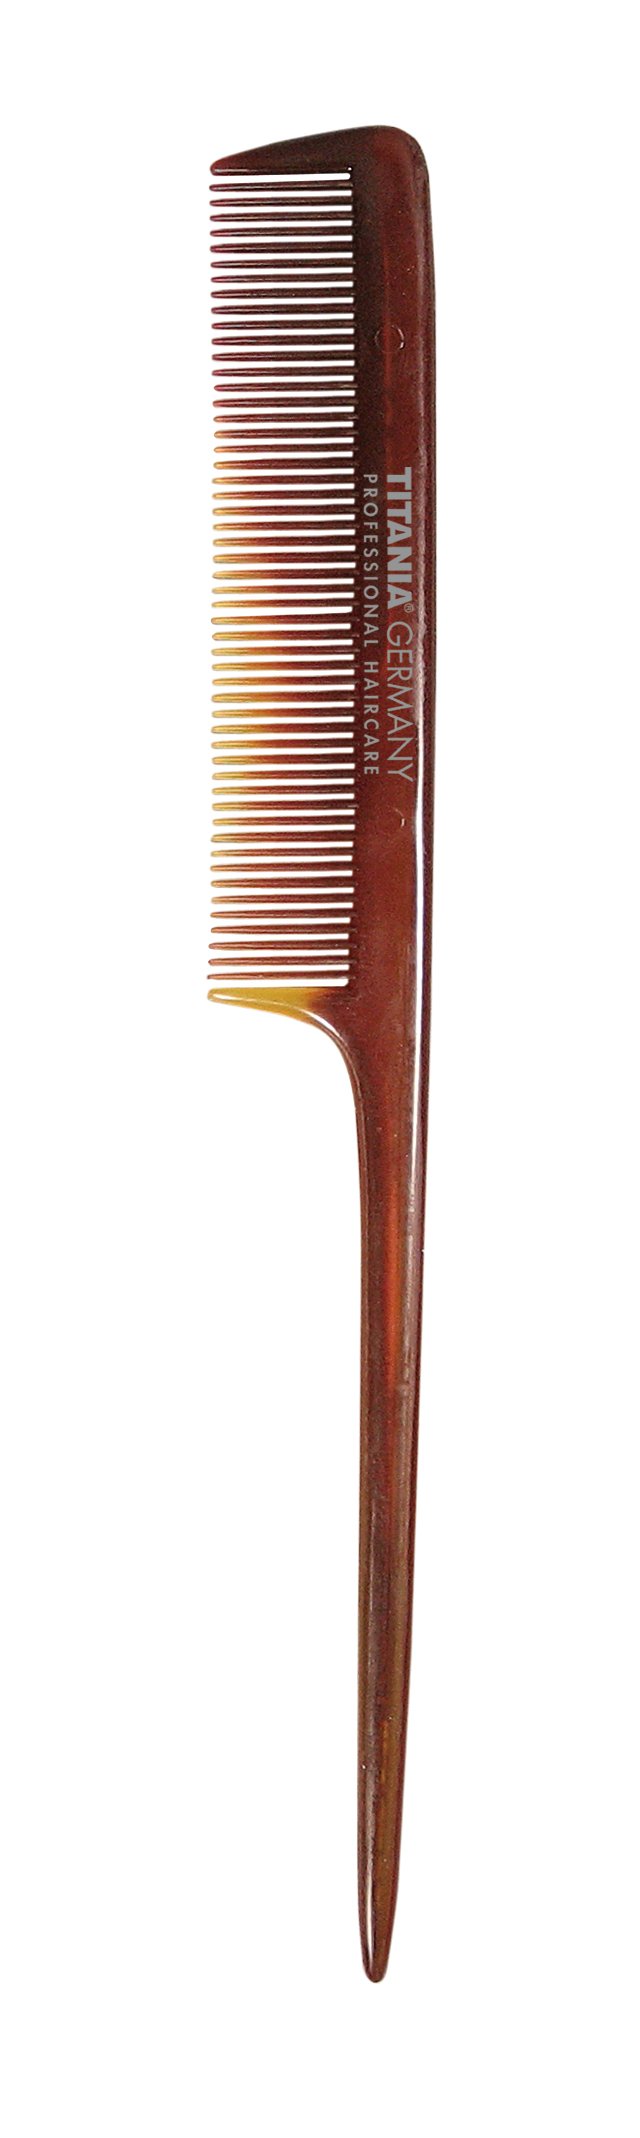 Гребінець-планка Titania Havannah з пластиковою ручкою, 20,5 см, коричневий (1808-8) - фото 1